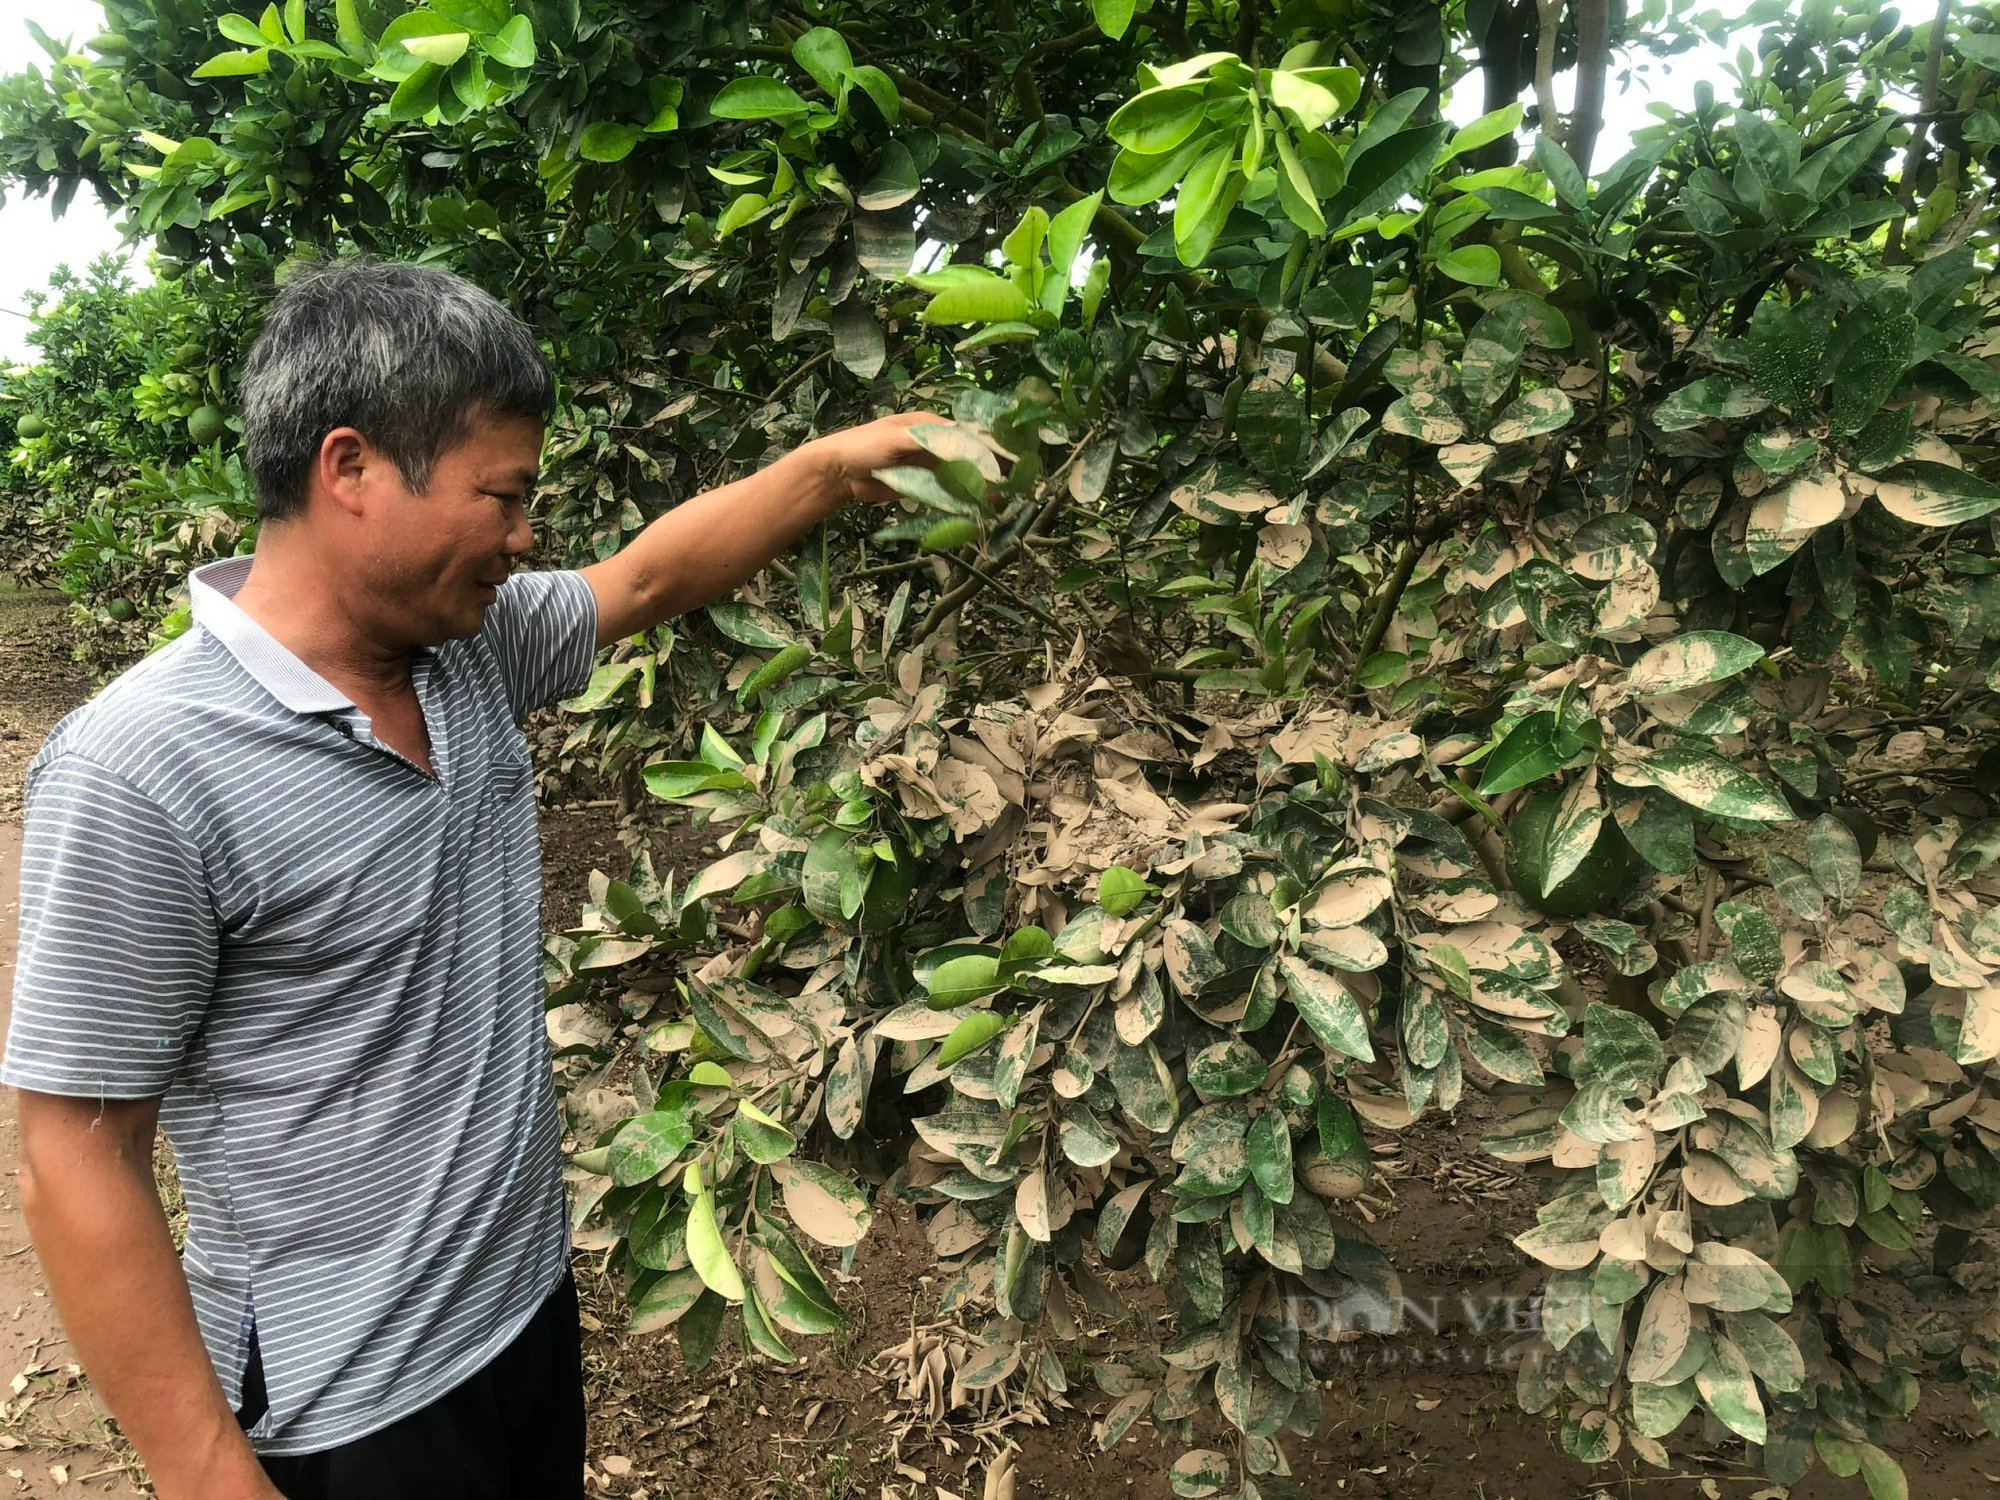 Kinh hoàng lũ quét ở Bắc Giang cuốn bật gốc cây, vườn cây nhãn, vải thiều... bị phủ kín bùn đen - Ảnh 3.